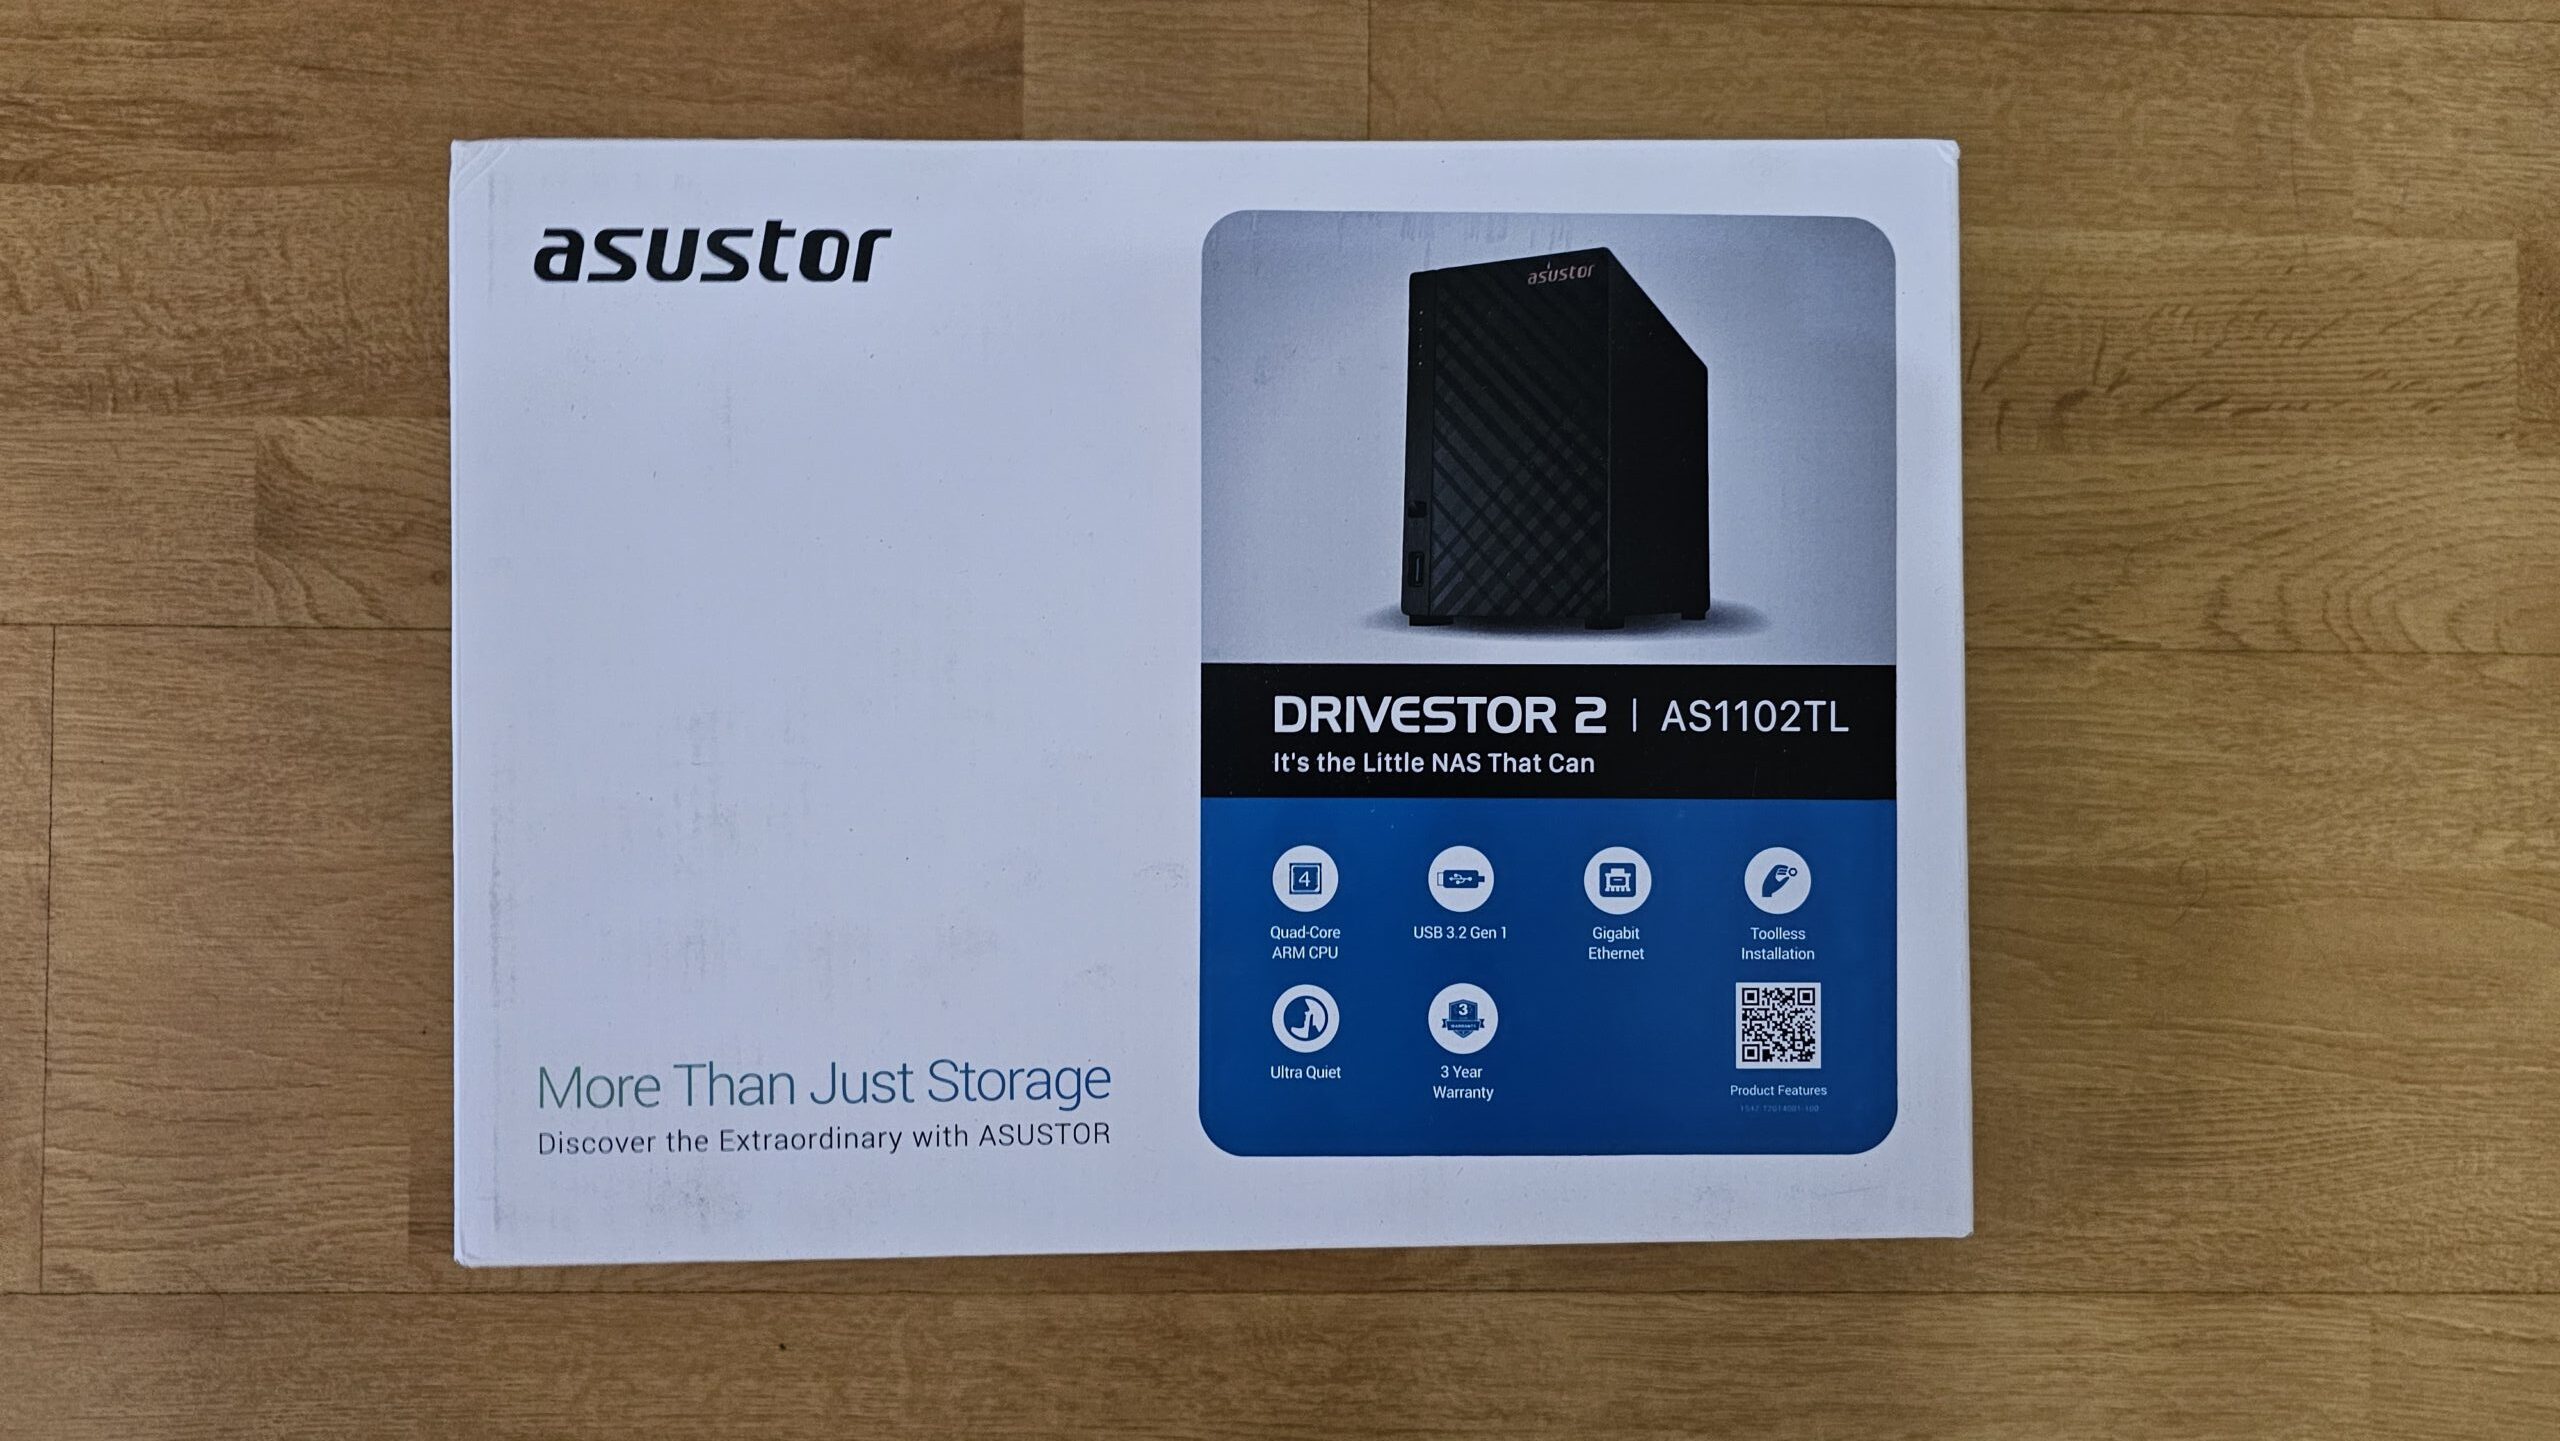 Análisis completo y unboxing del Asustor Drivestor 2 Lite AS1102TL: La revolución del almacenamiento doméstico